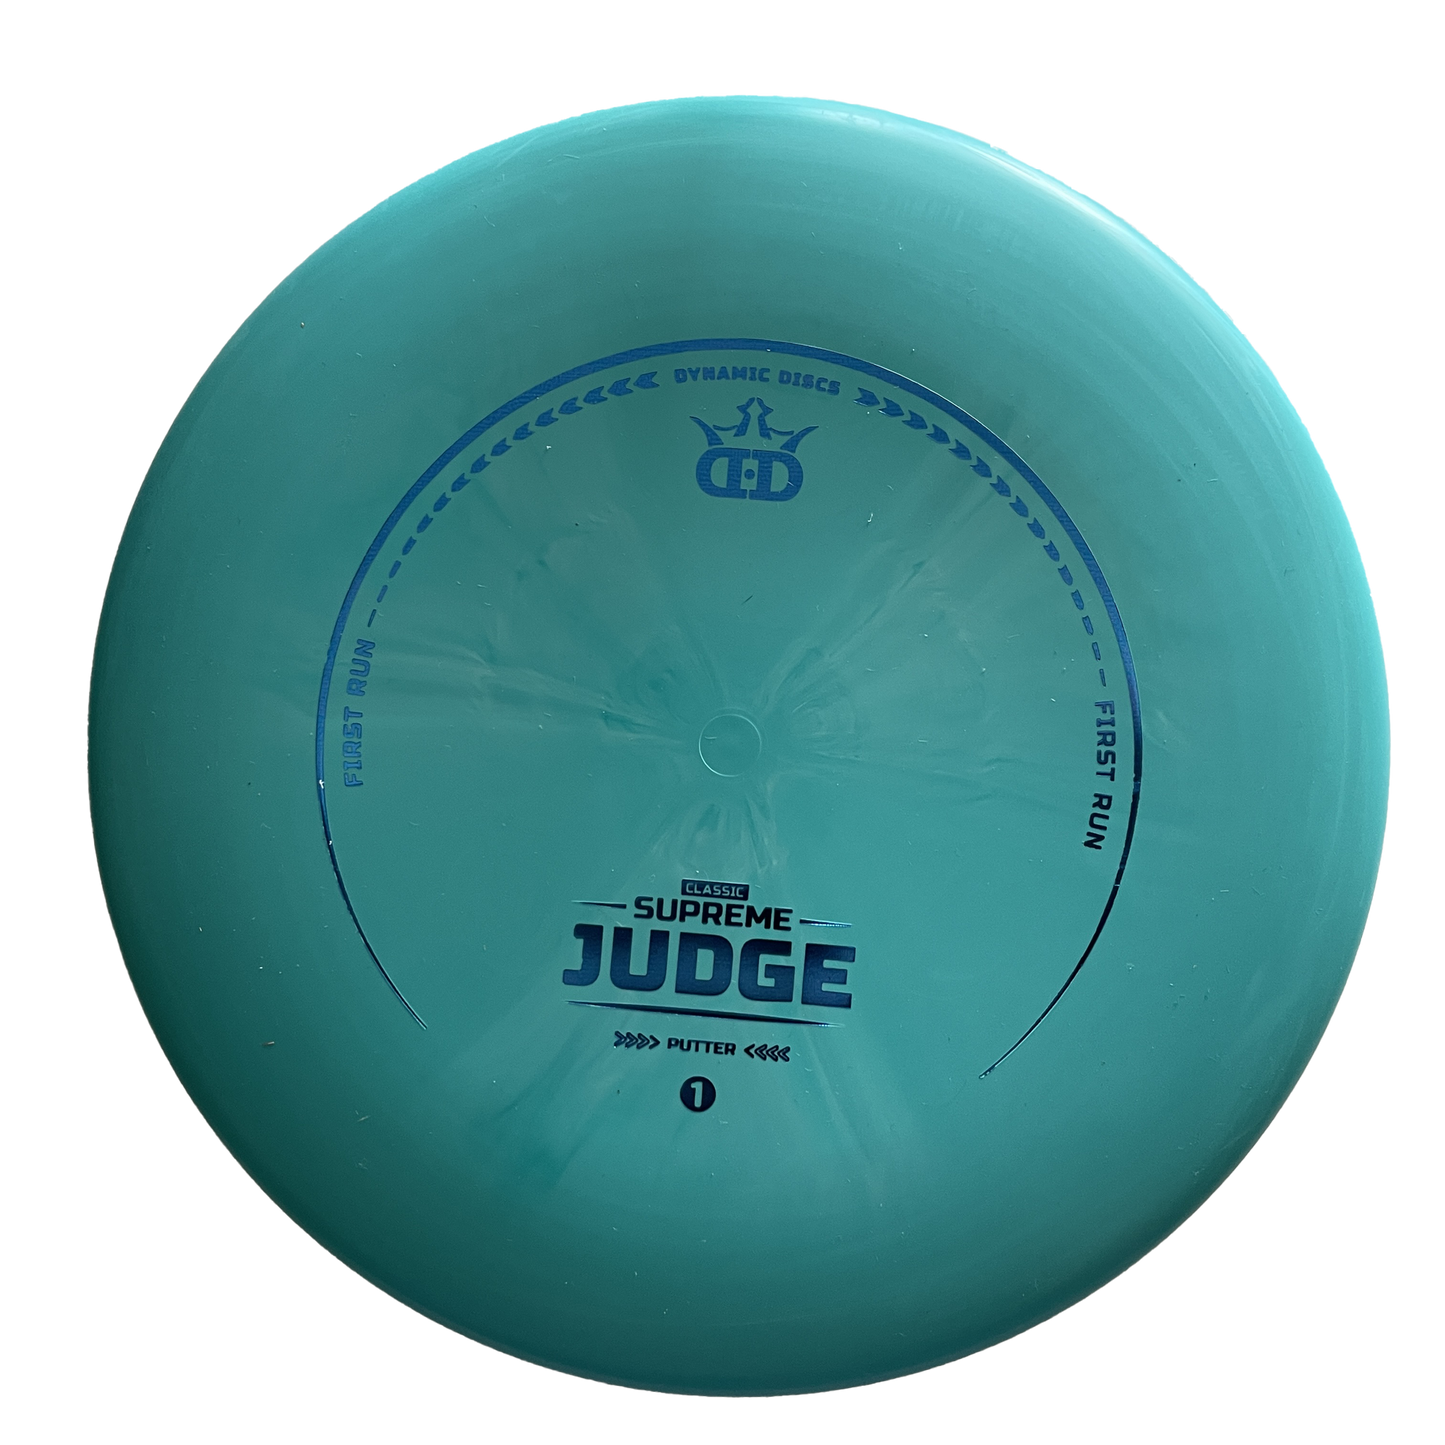 Dynamic Discs Classic Supreme Judge First Run - Putter